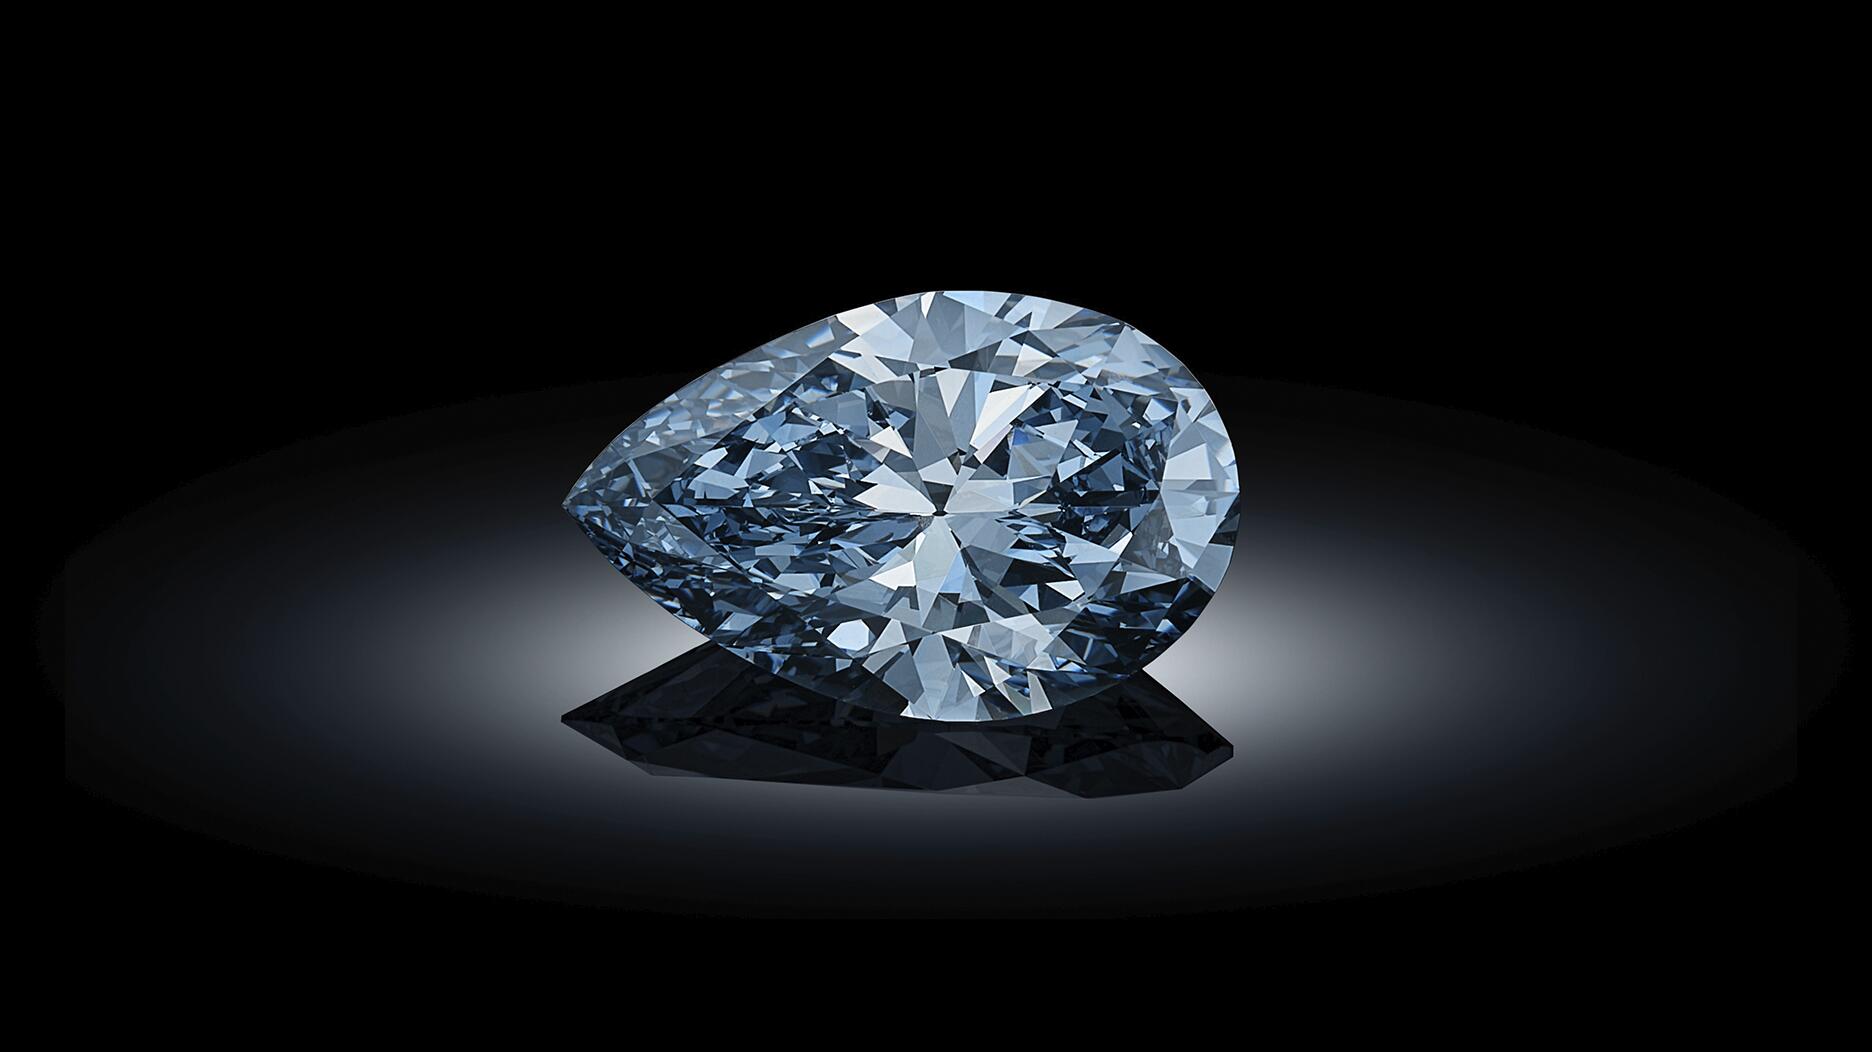 Bulgari Laguna Blu diamond